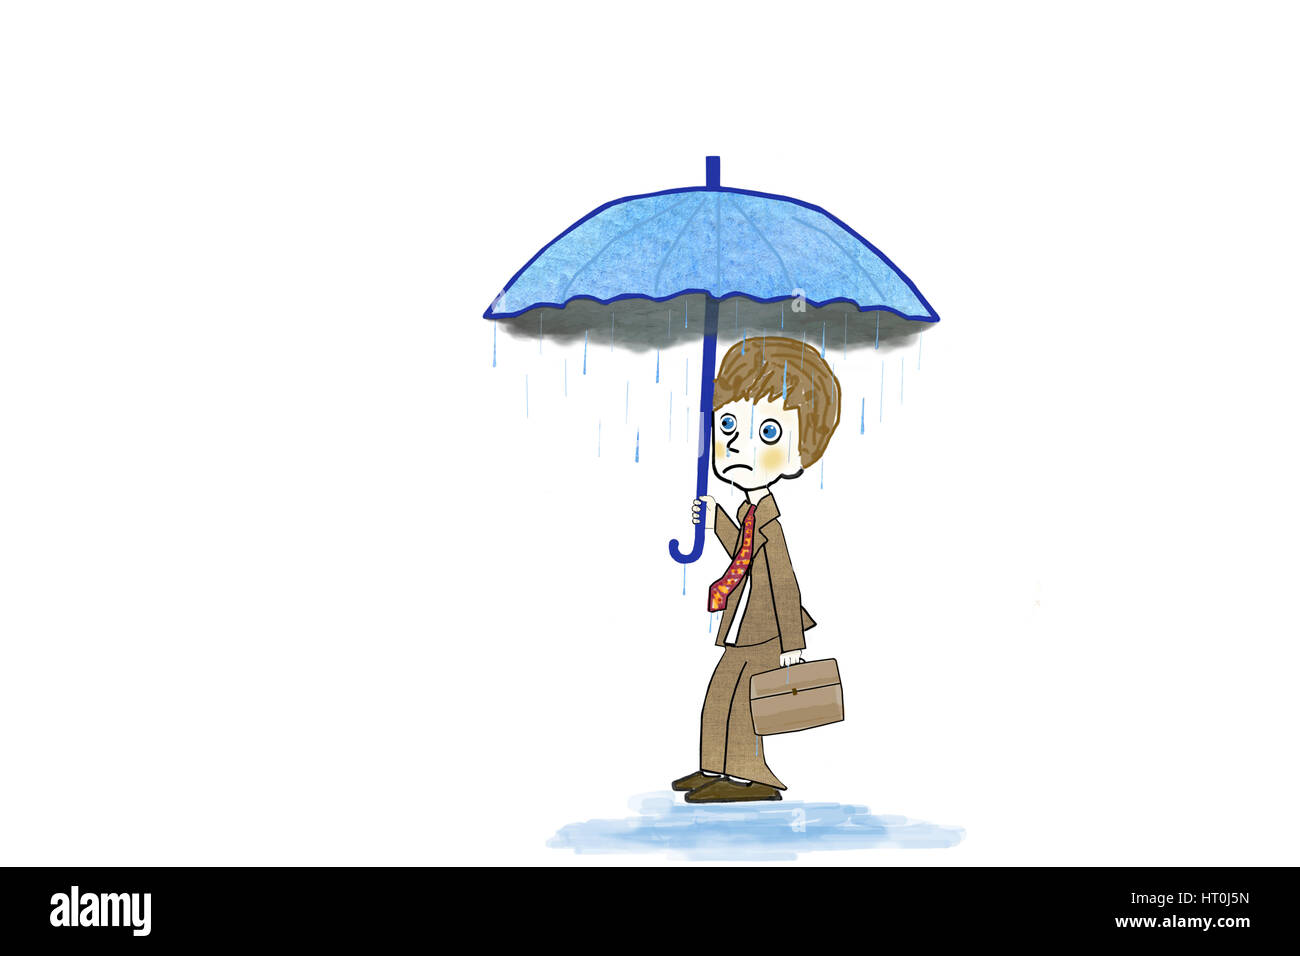 Illustrazione di un imprenditore con pioggia scendendo dall'interno di una nuvola nel suo ombrello. Concetto avversità, sconfitta, disperazione, disoccupati, guasto, crisi. Foto Stock